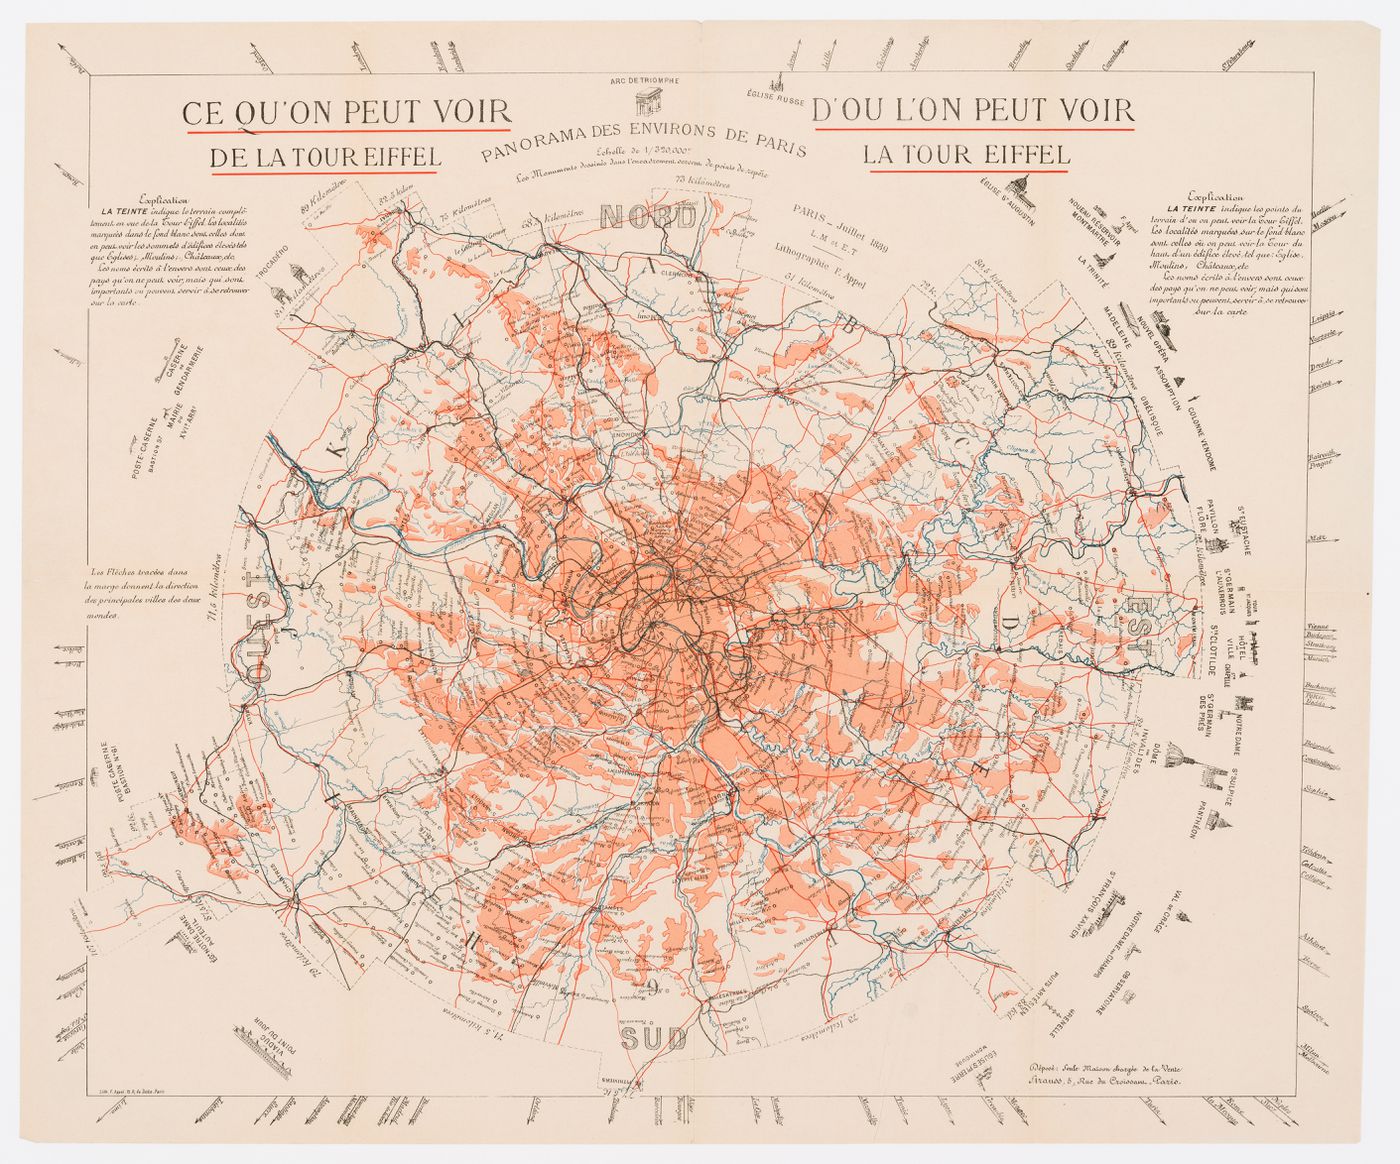 Carte des environs de Paris intitulée "Ce qu'on peut voir de la Tour Eiffel" et "D'où l'on peut voir la Tour Eiffel"